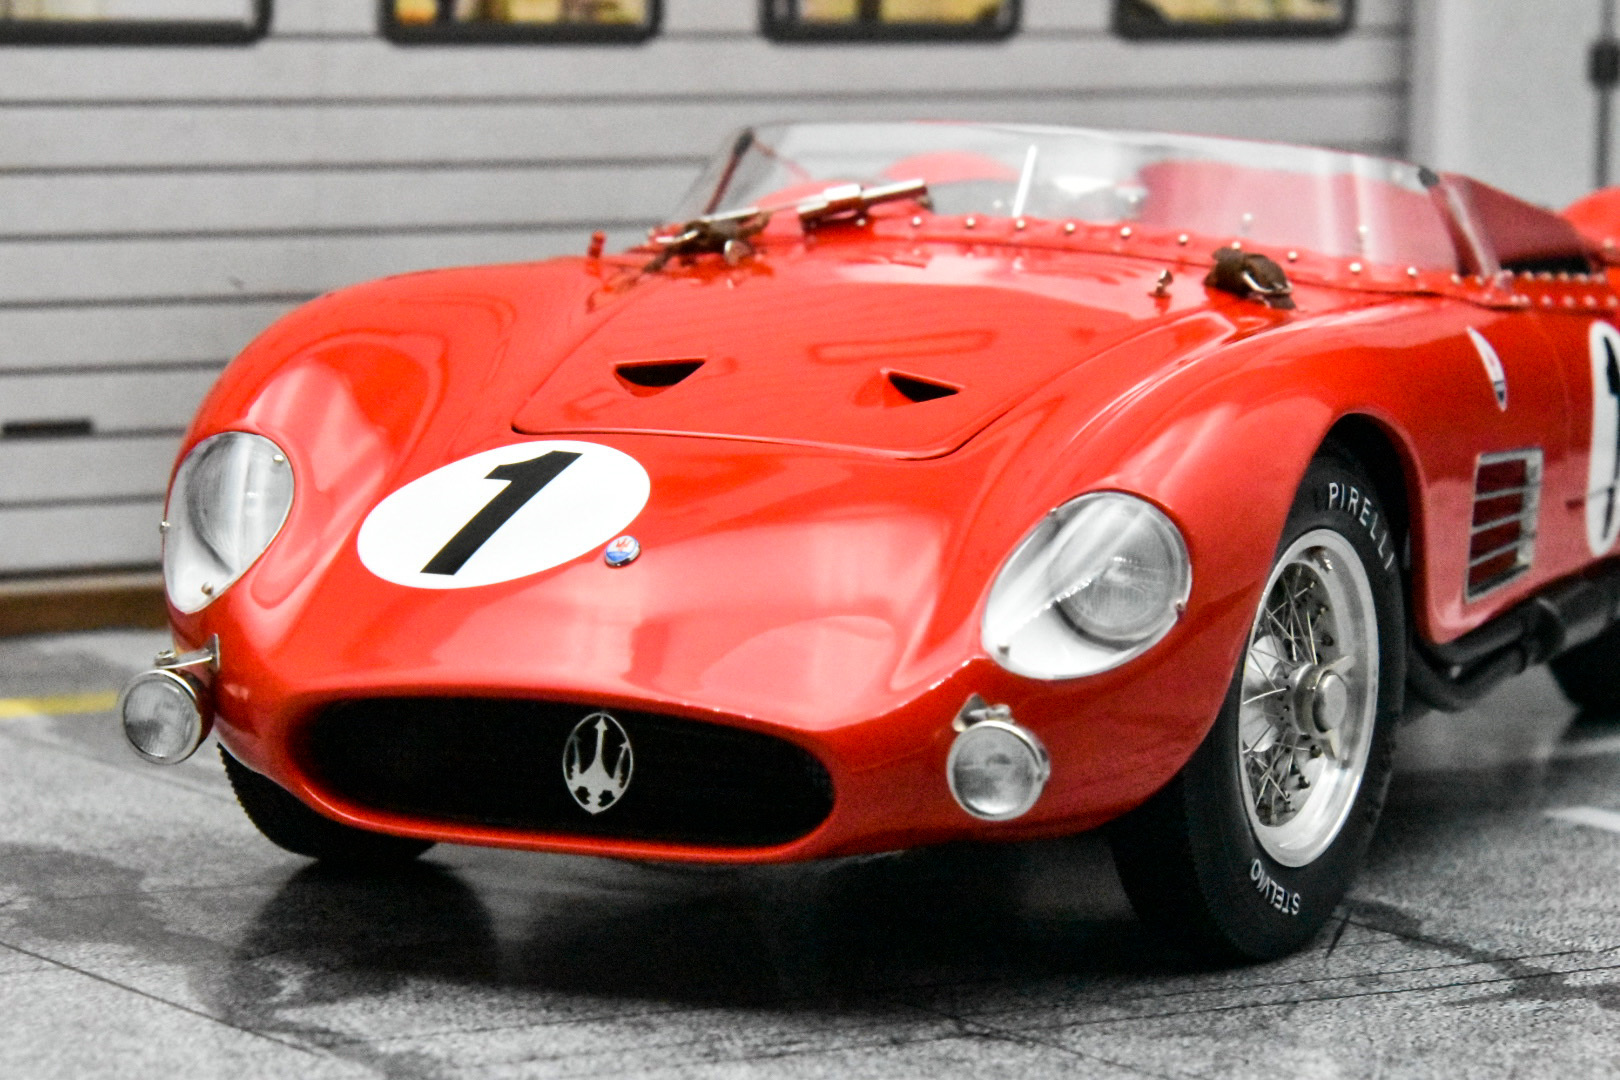 【廃番特価】CMC 1/18 Maserati 300S 1958 Le Mans No.1 (M-108) レーシングカー